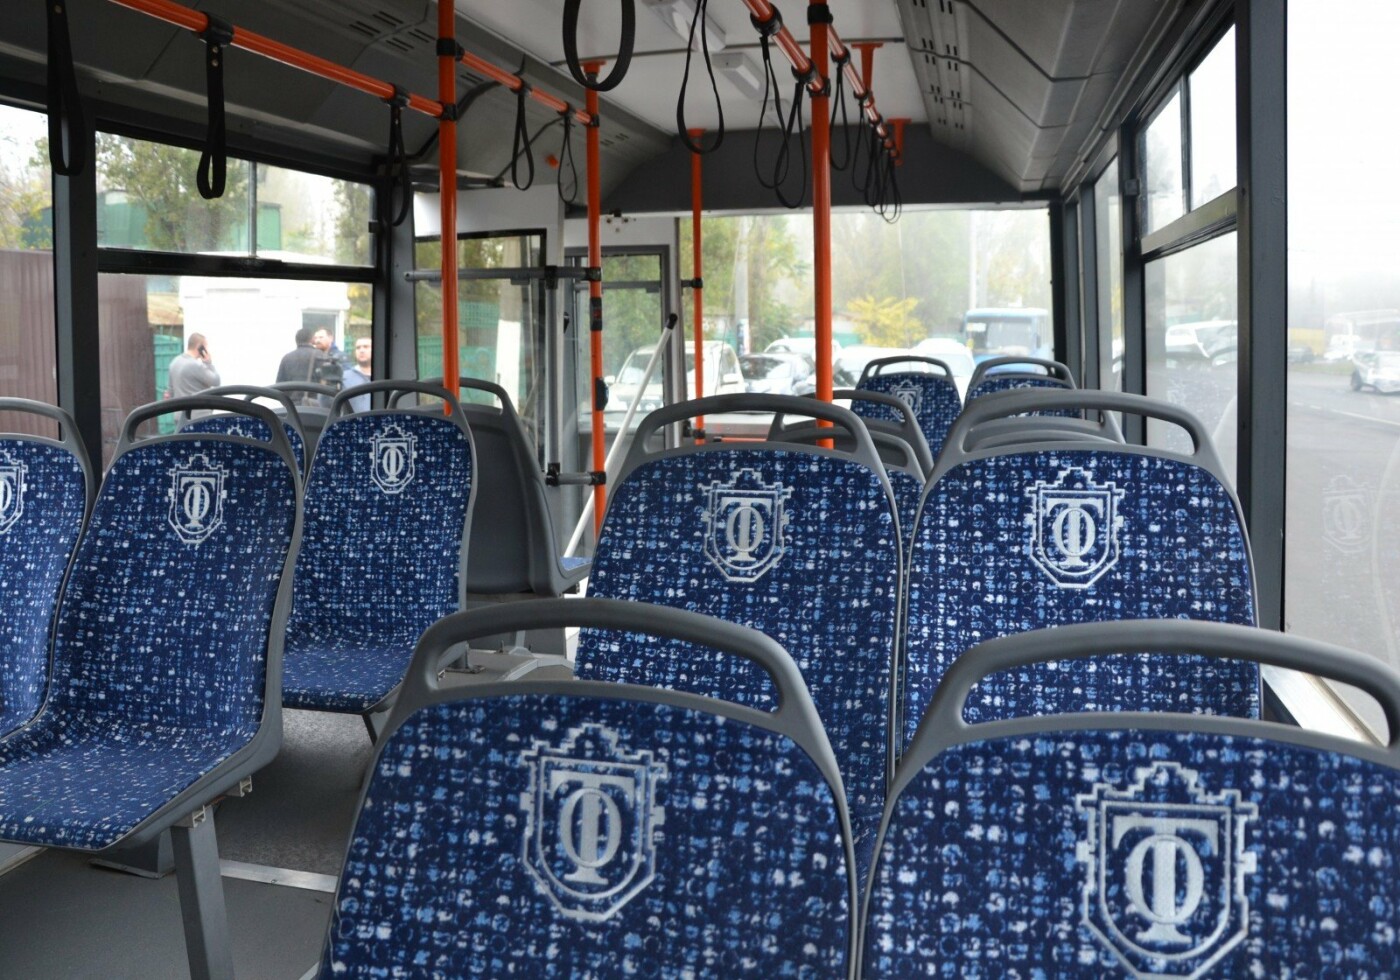 Первый выезд одесского электробуса на 10-й маршрут